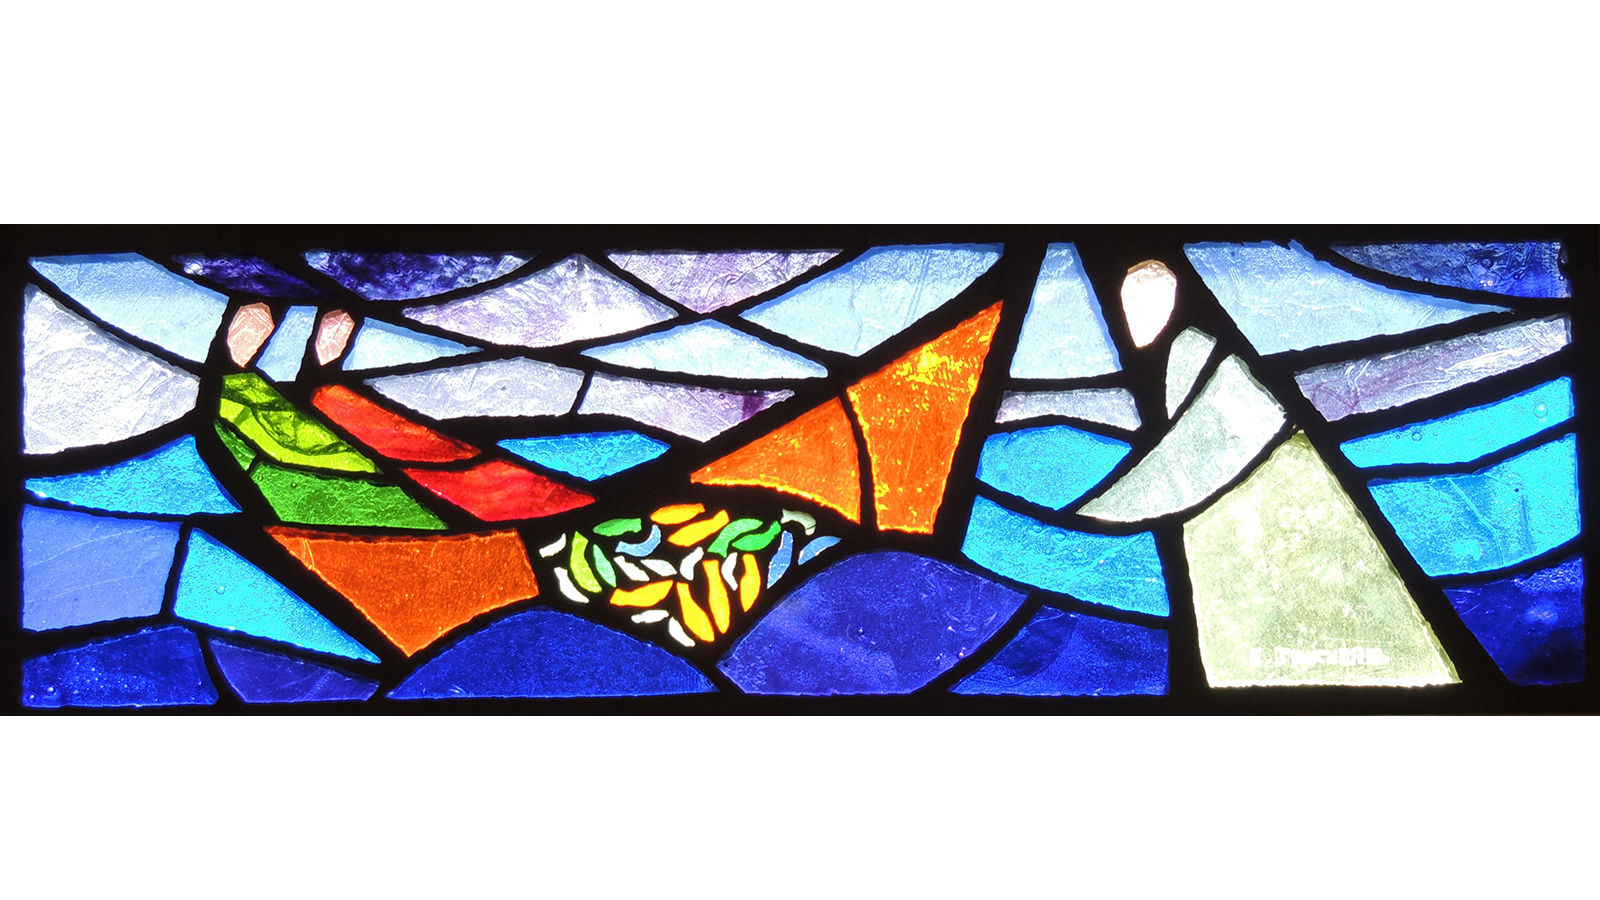 La pêche miraculeuse: vitrail en dalle de verre, Elisabeth Trocheris, 1984